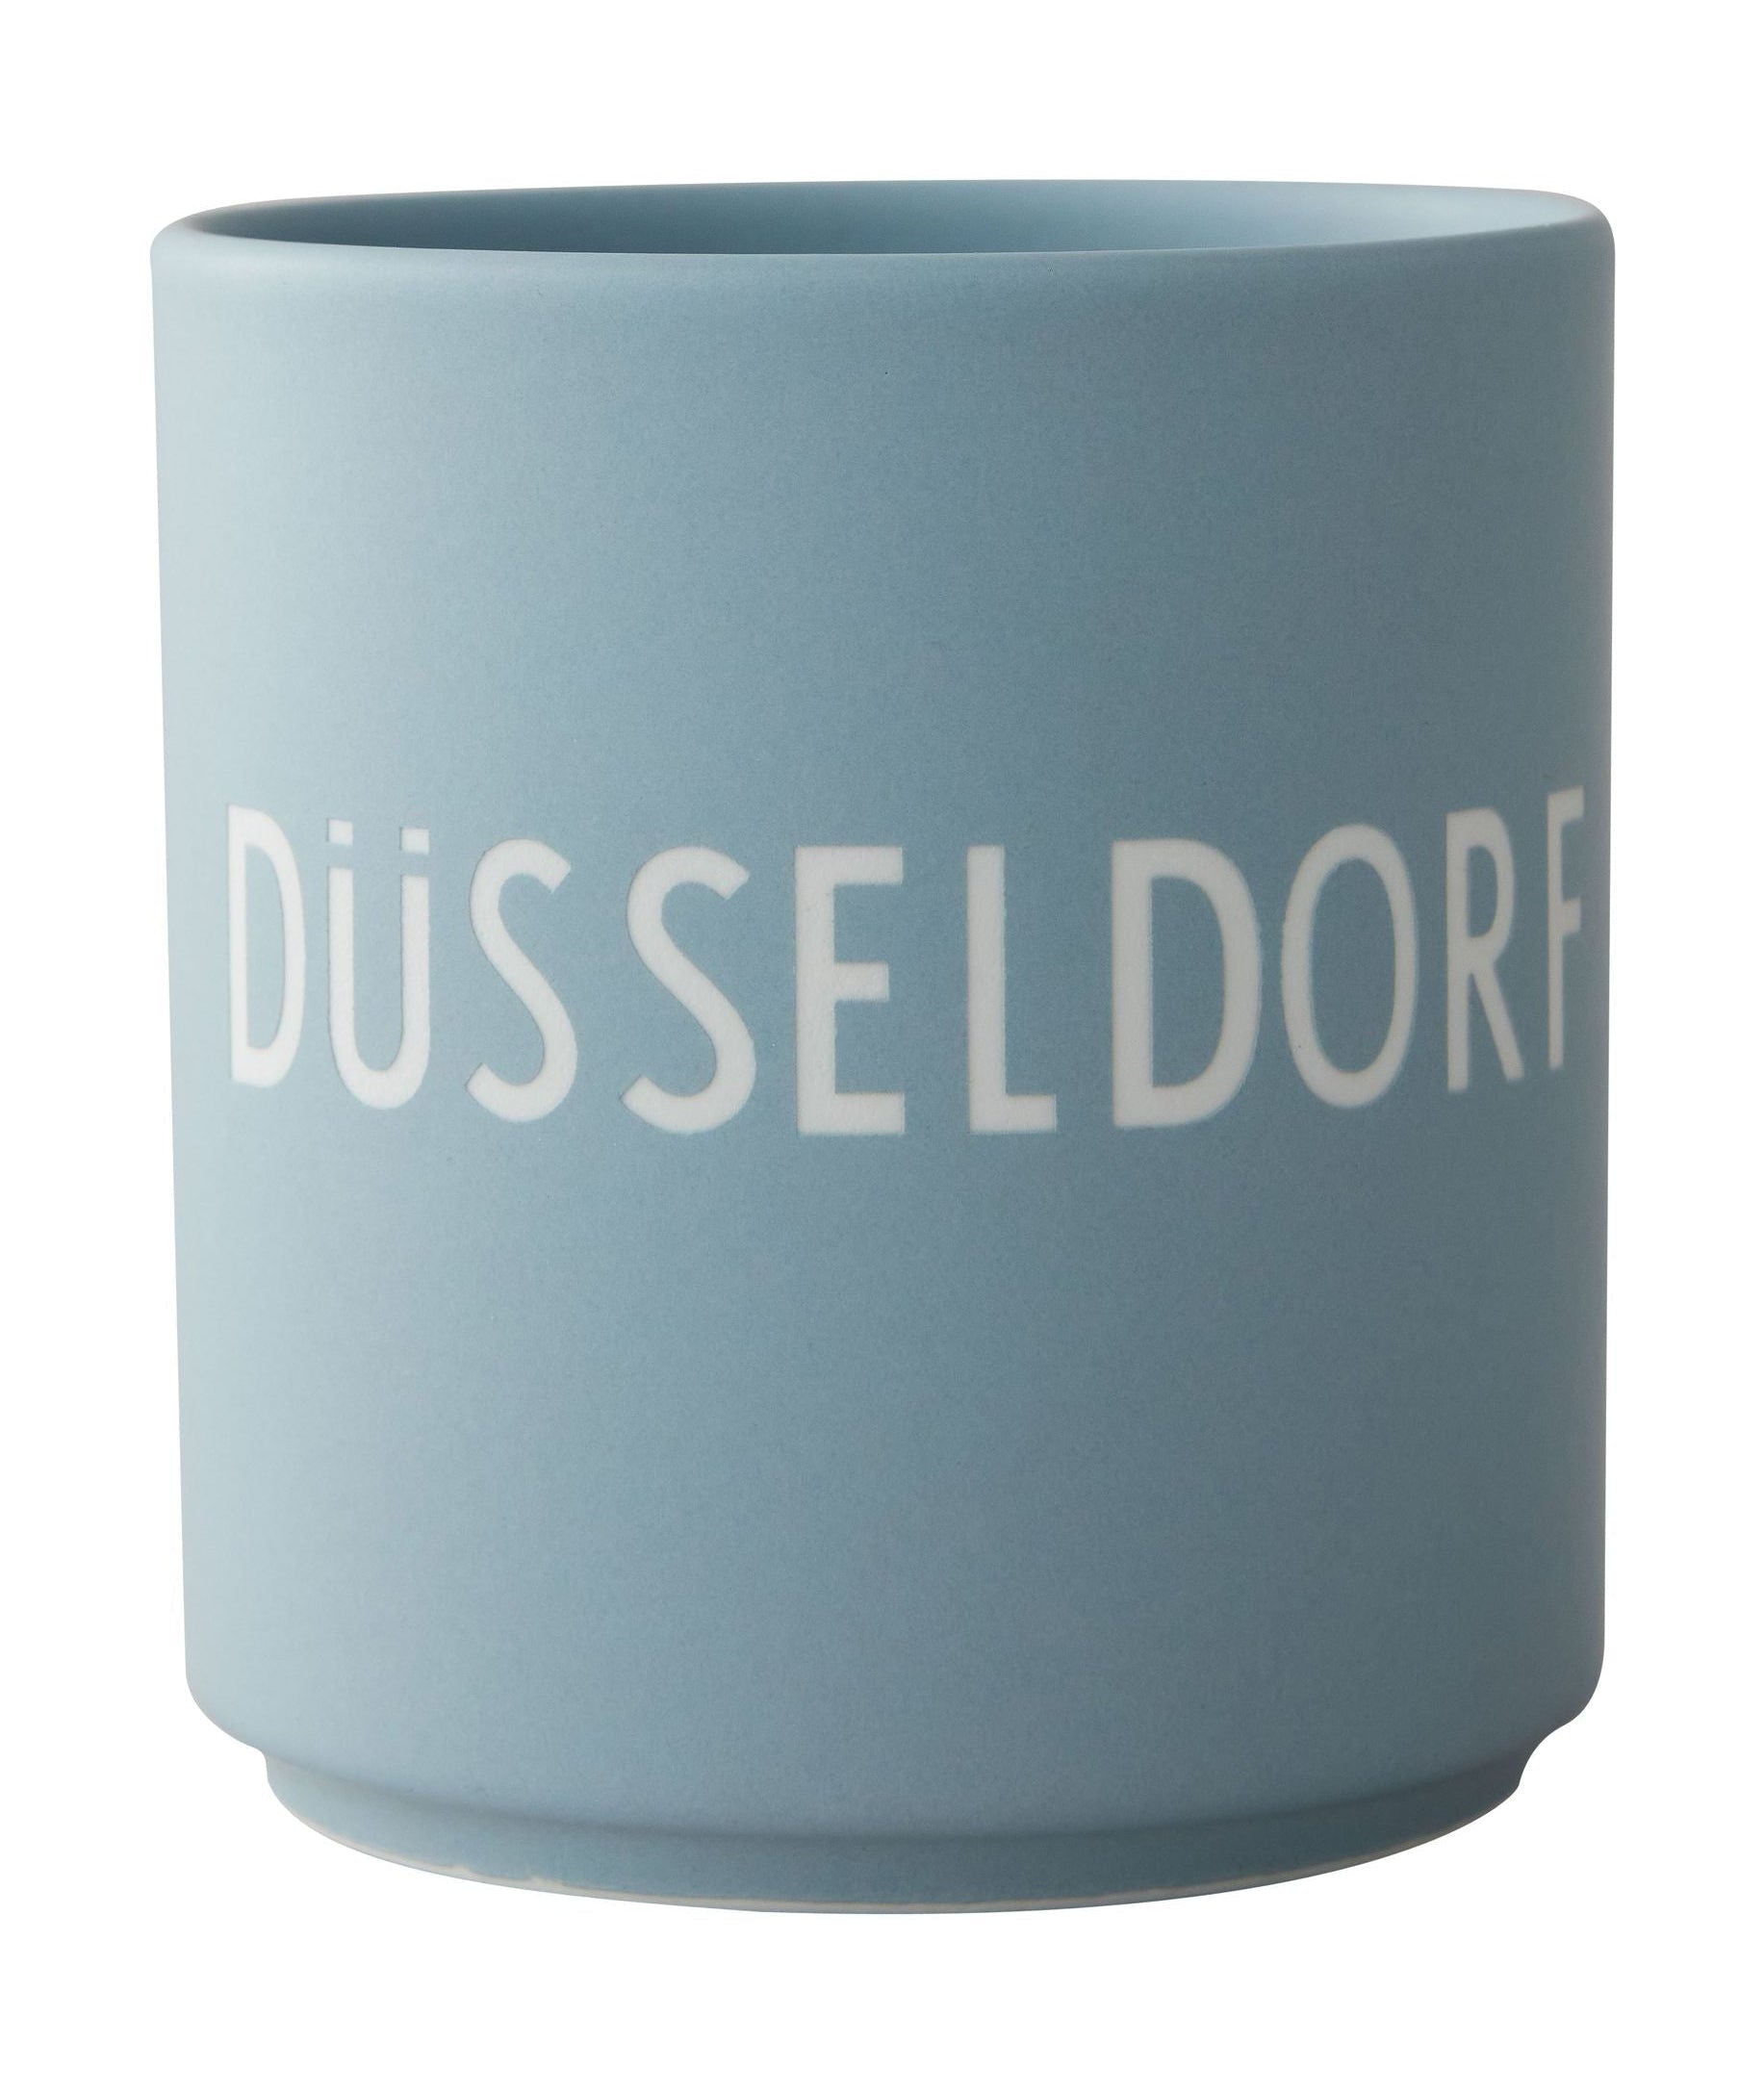 Mug préféré de la lettre de design Düsseldorf, bleu clair